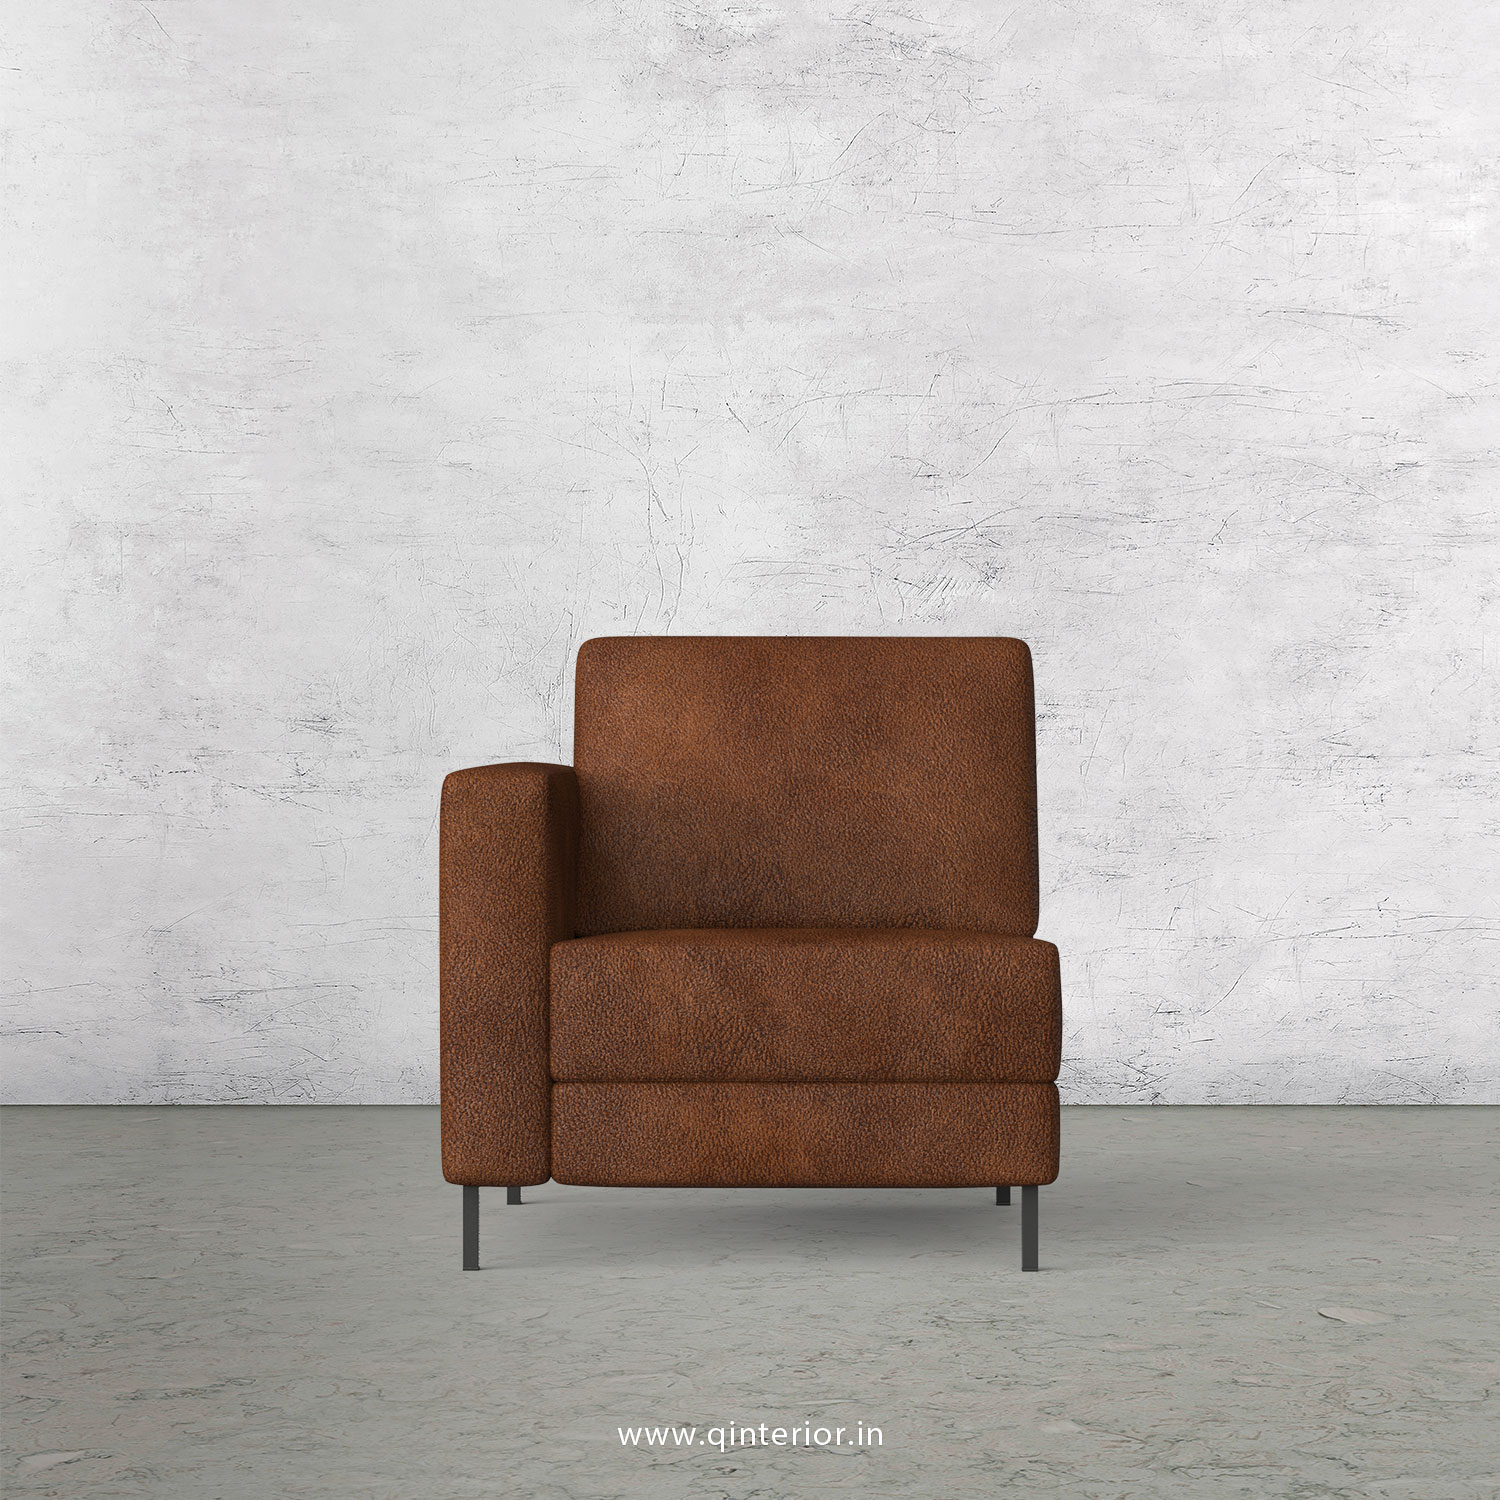 Nirvana 1 Seater Modular Sofa in Fab Leather Fabric - MSFA001 FL09